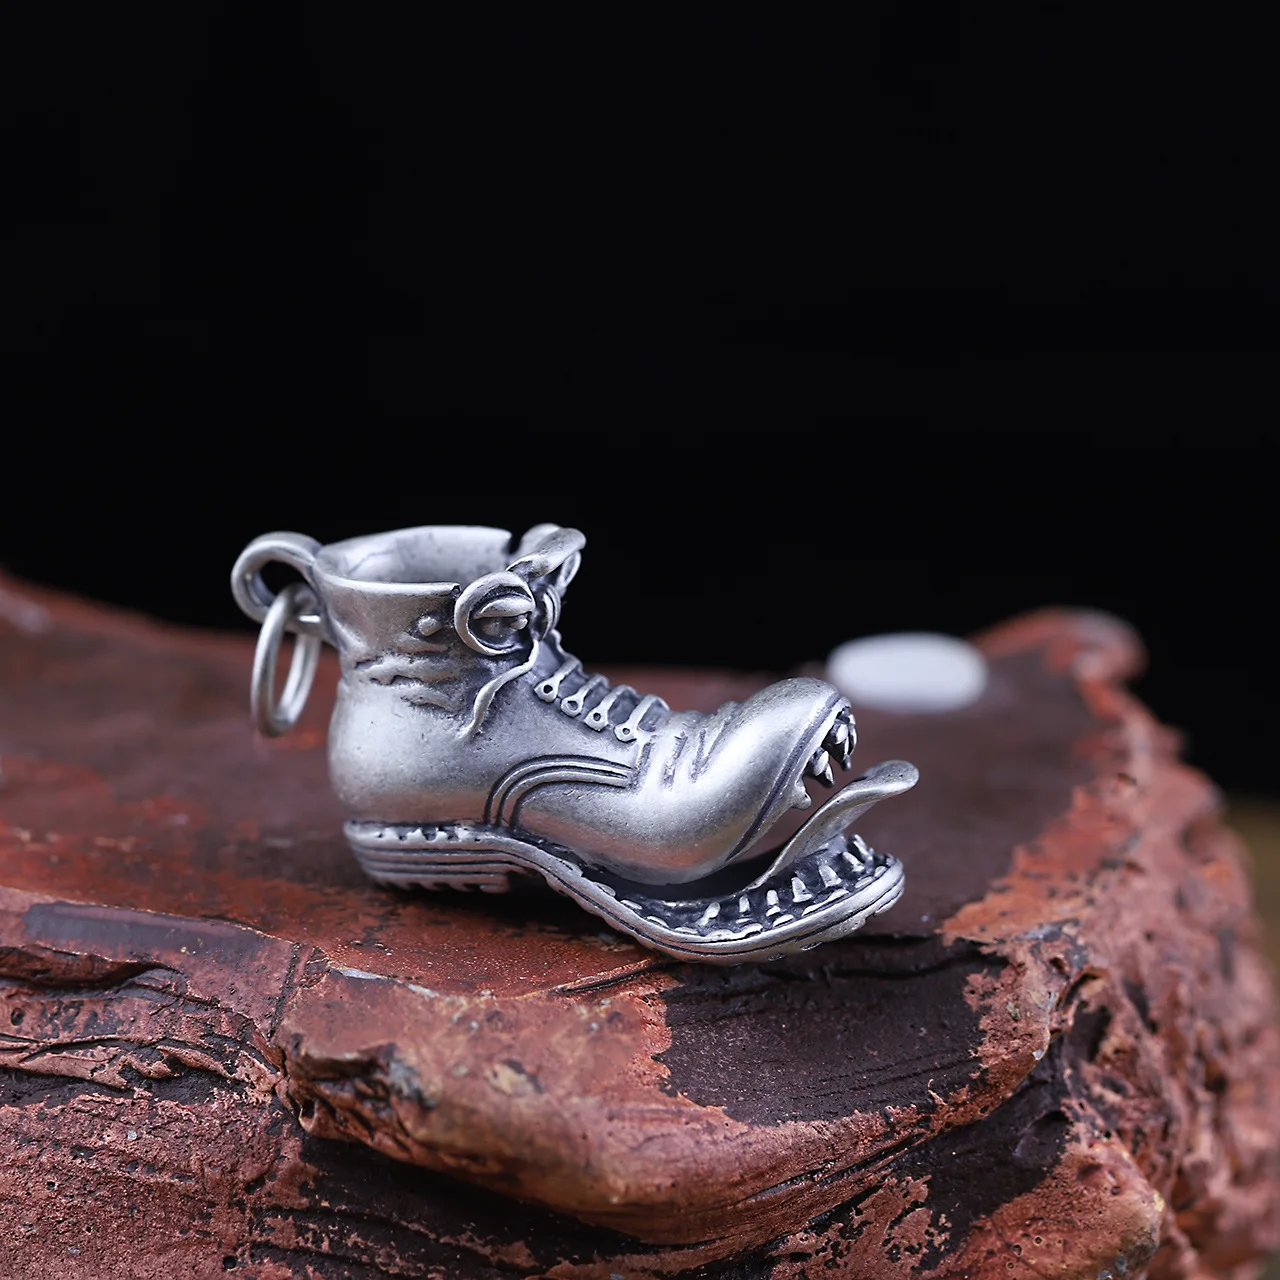 S925 чистого серебра украшения тайское серебро seiko мужские Воротник обувь кулон хип-хоп личности